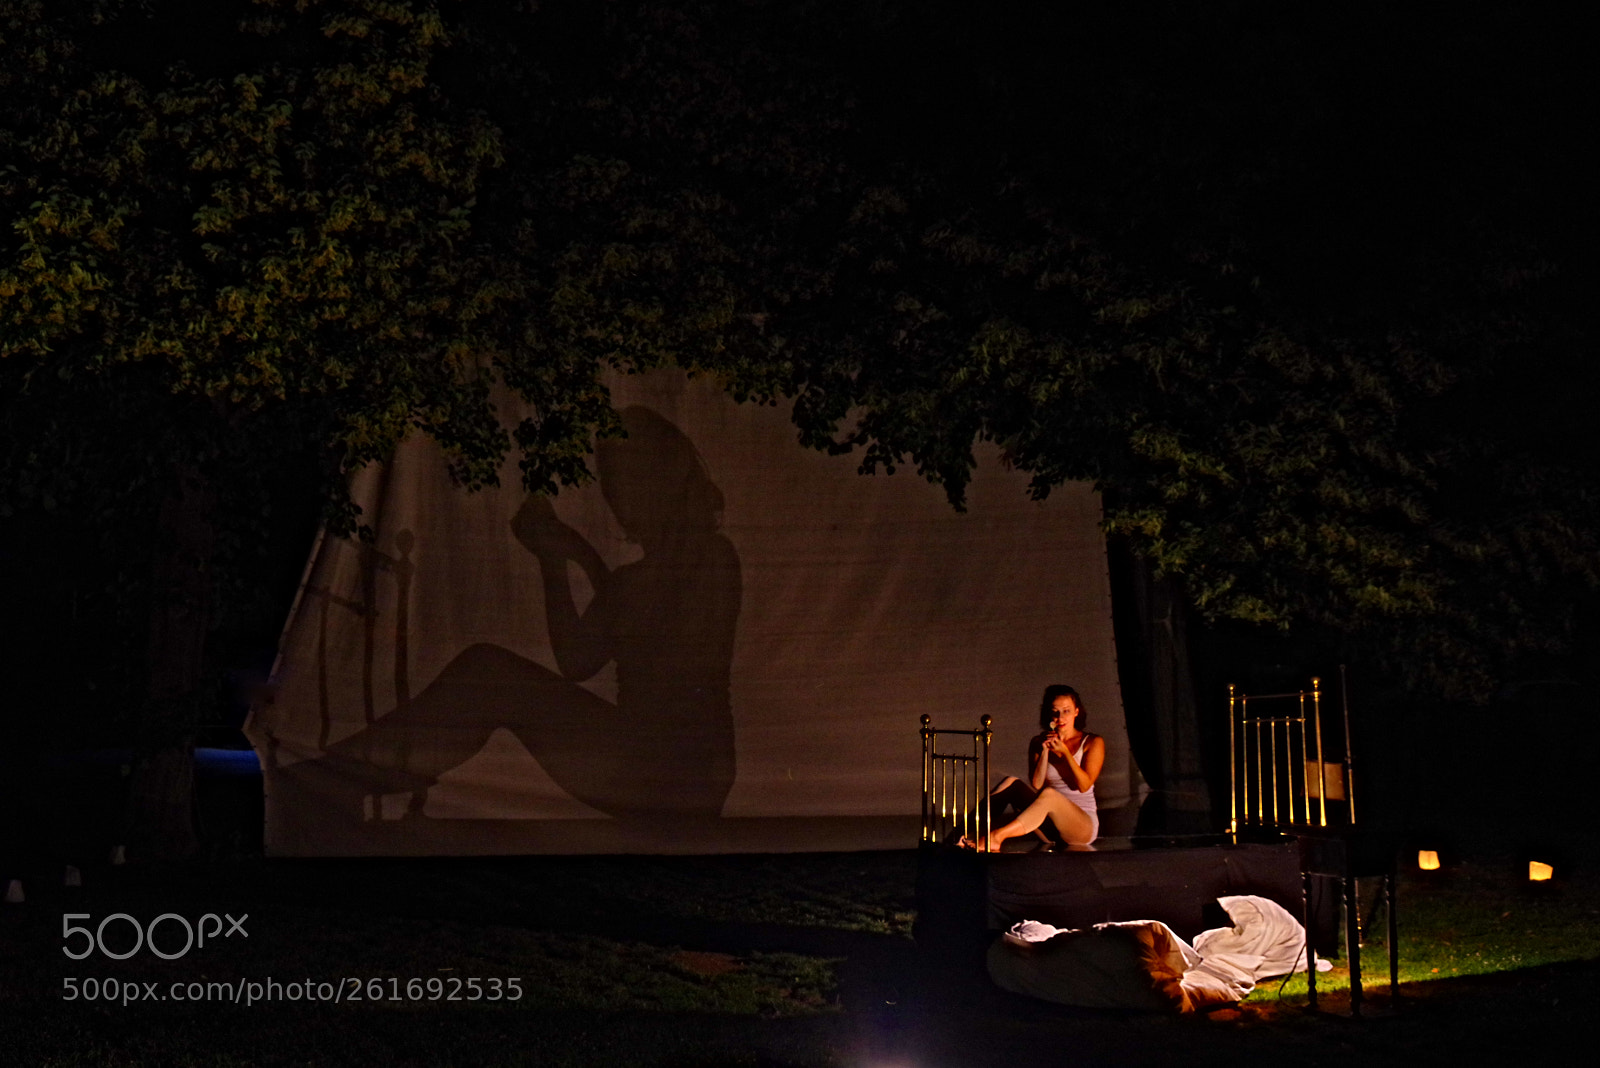 Pentax K-1 sample photo. Night shadows (theater anu) photography